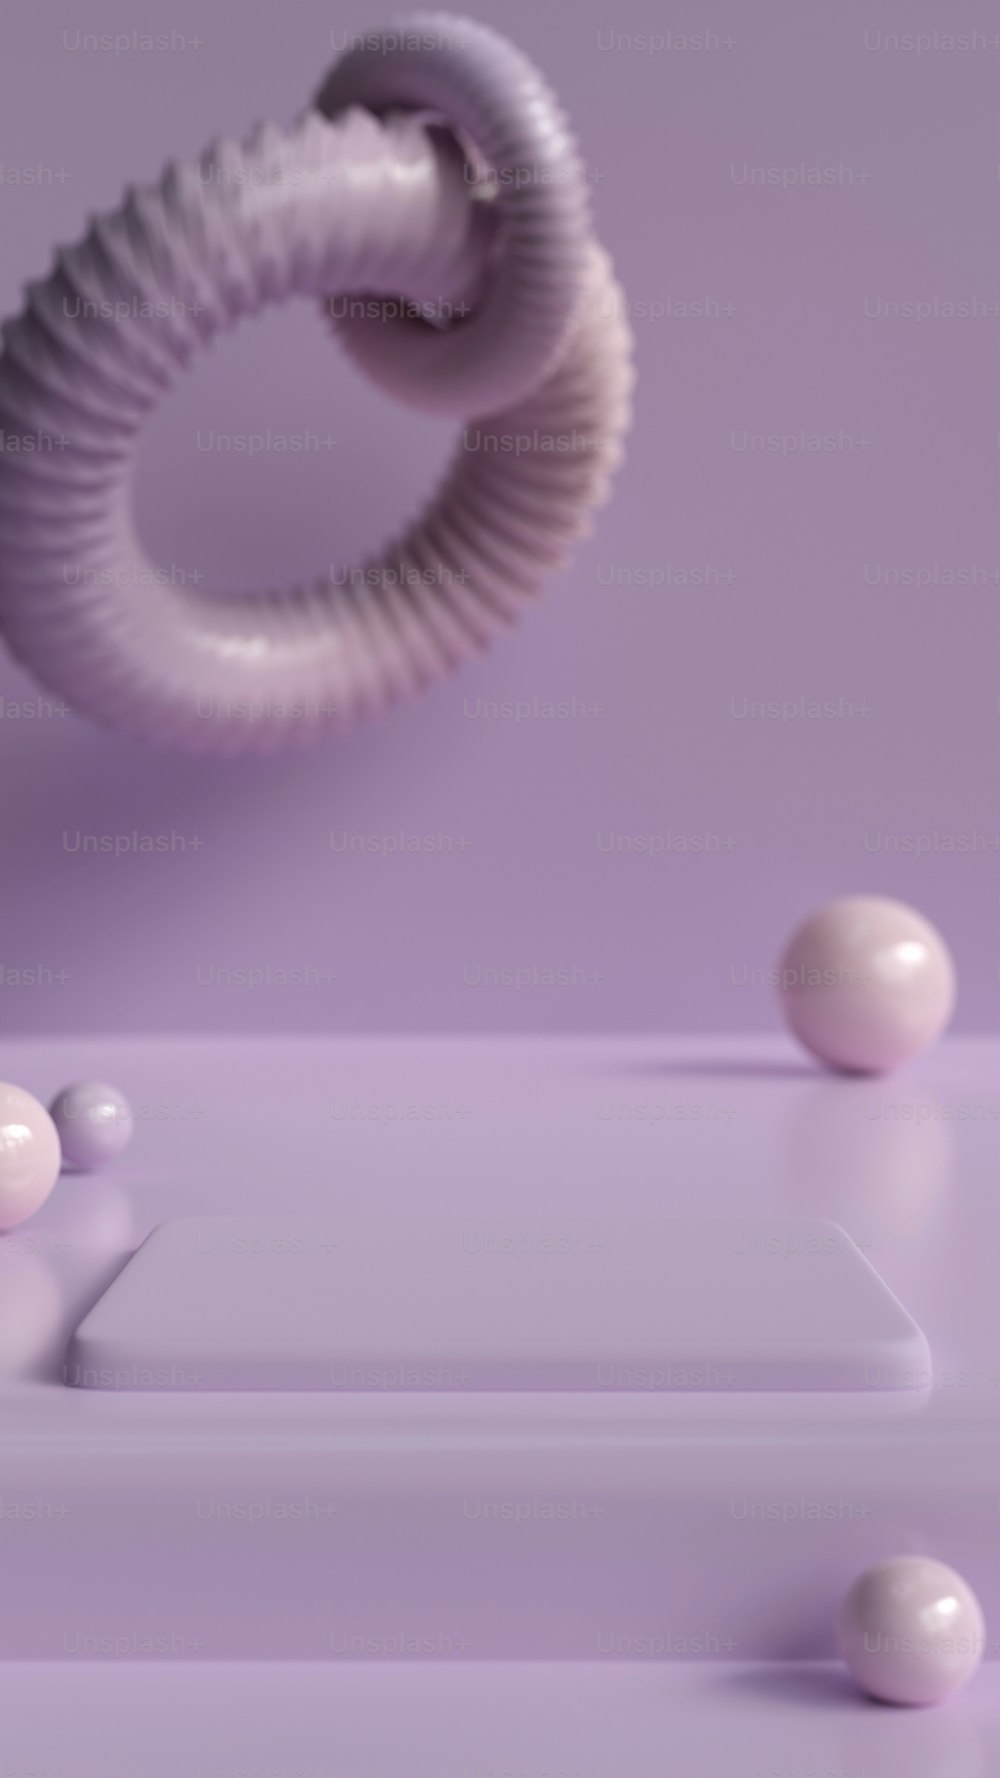 una pared púrpura con un objeto blanco encima